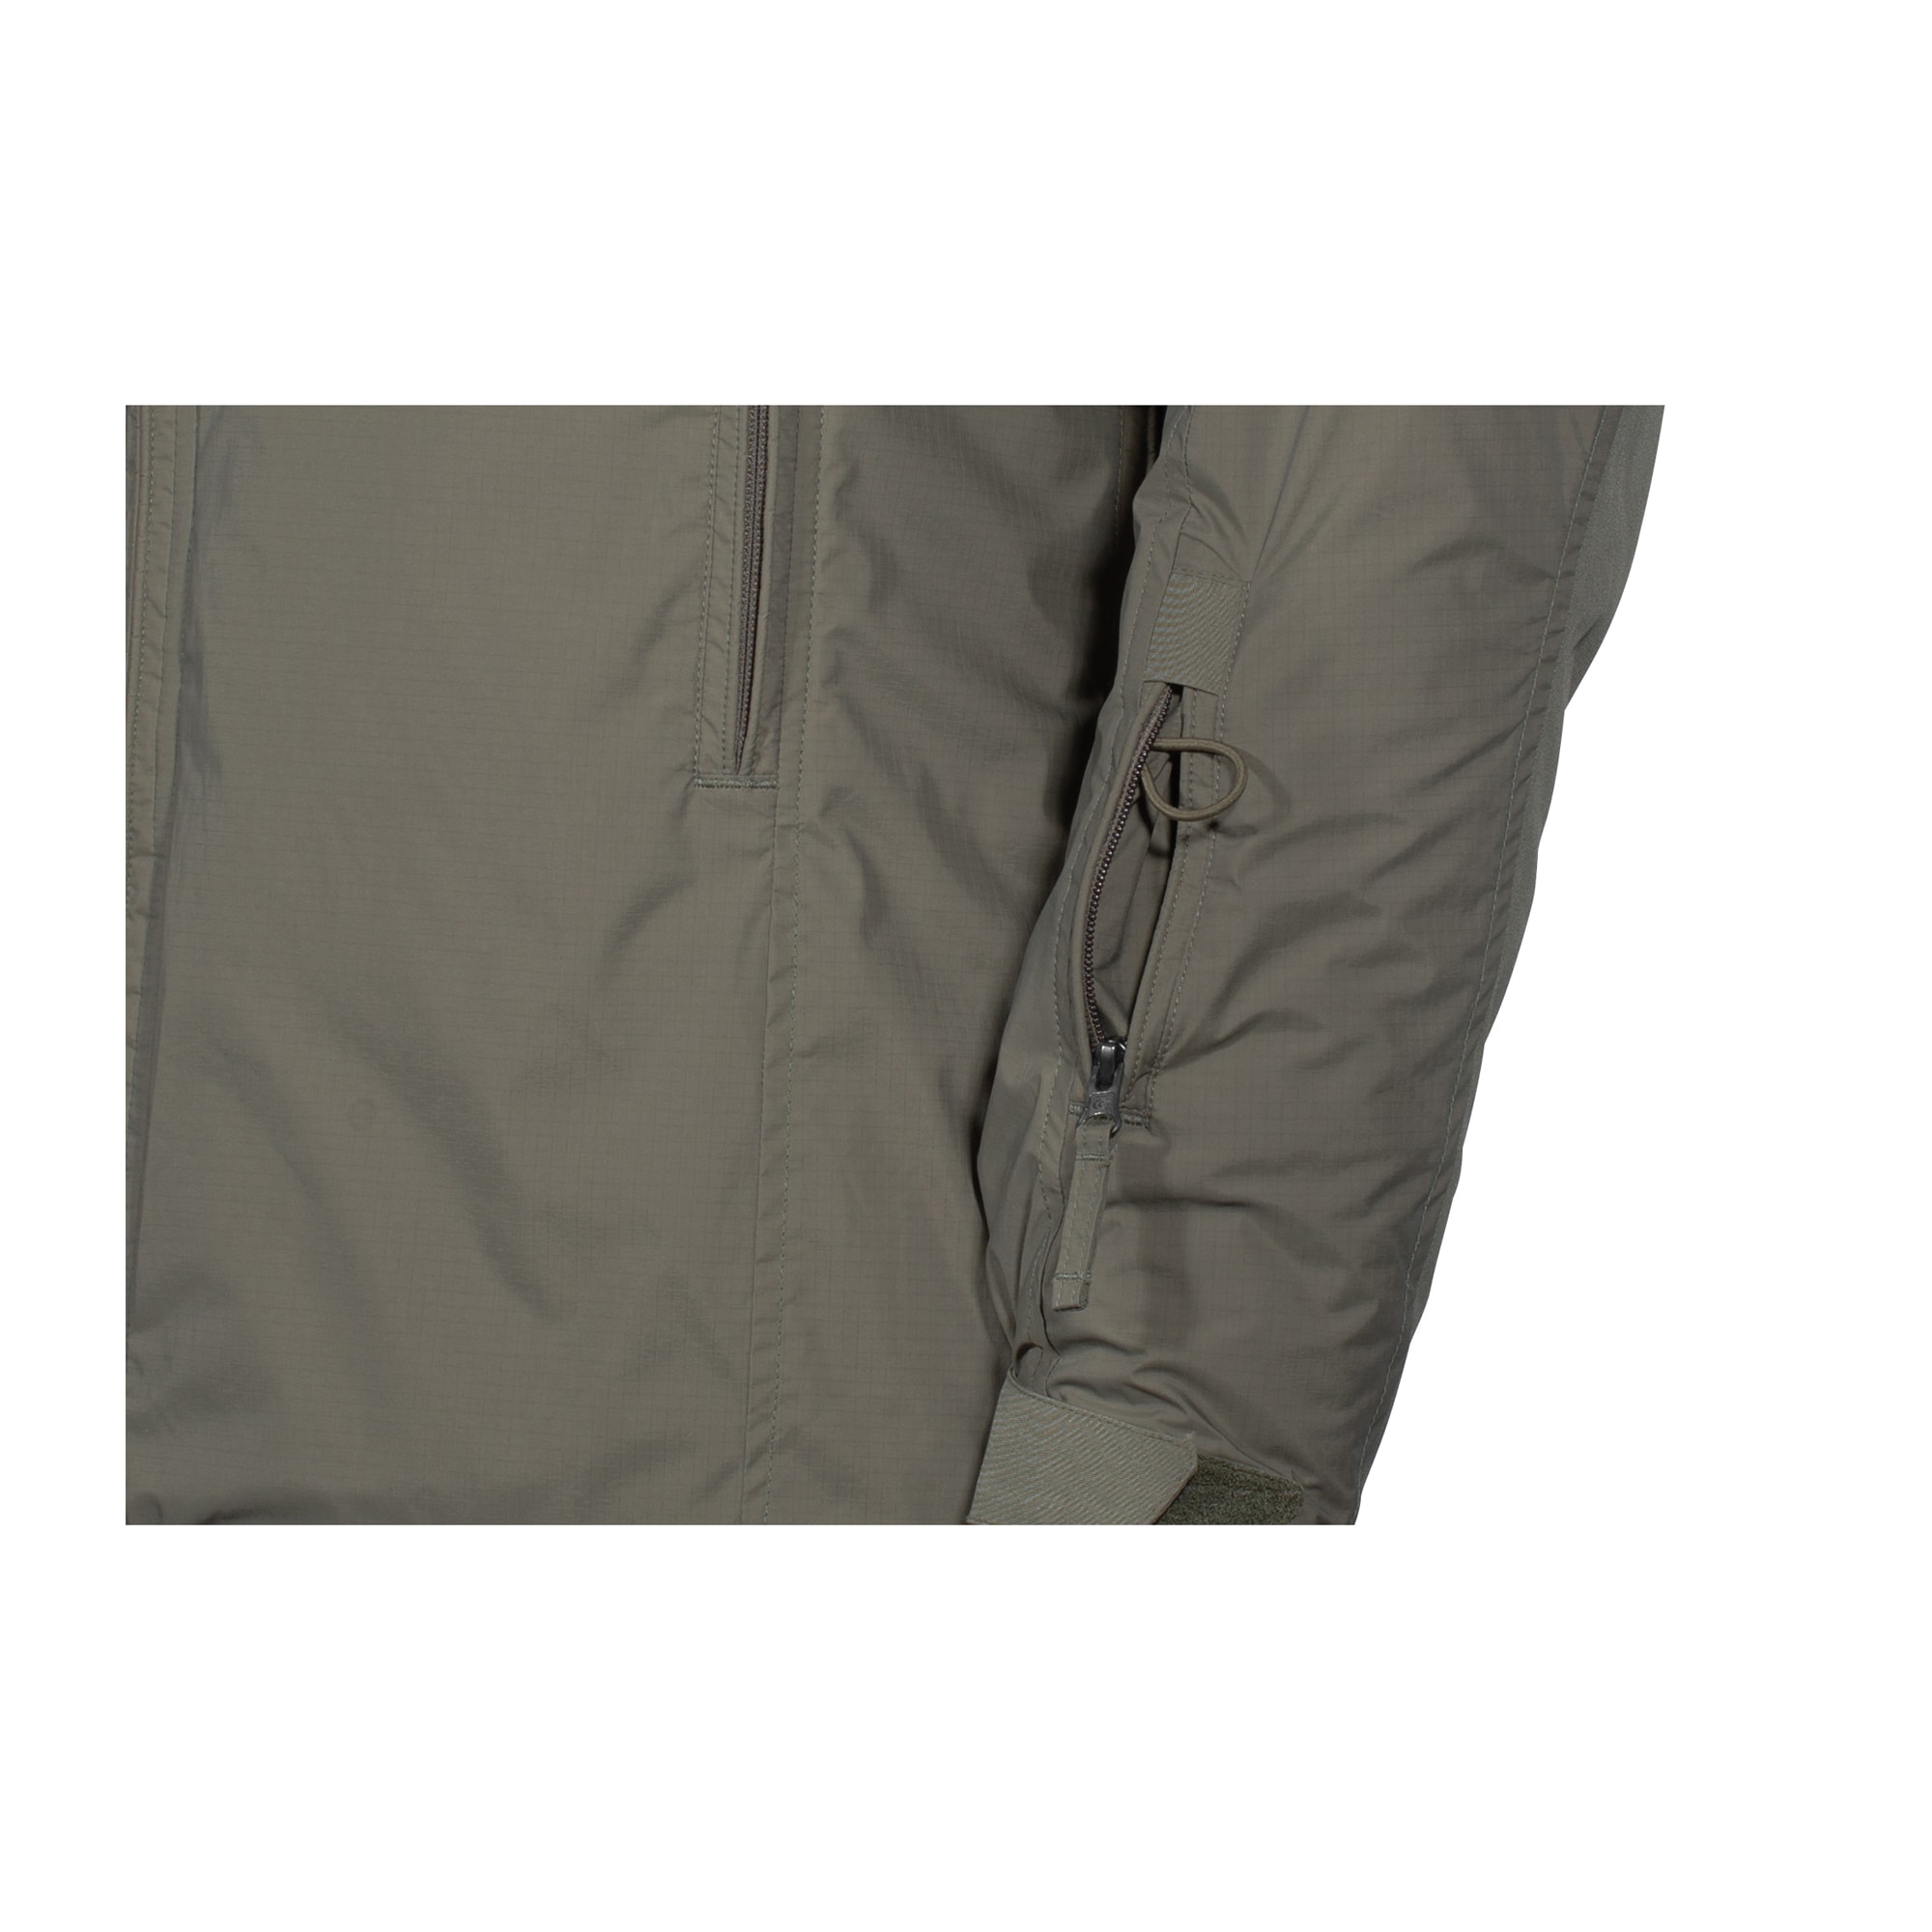 Carinthia Jacket HIG 4.0 olive | Carinthia Jacket HIG 4.0 olive ...